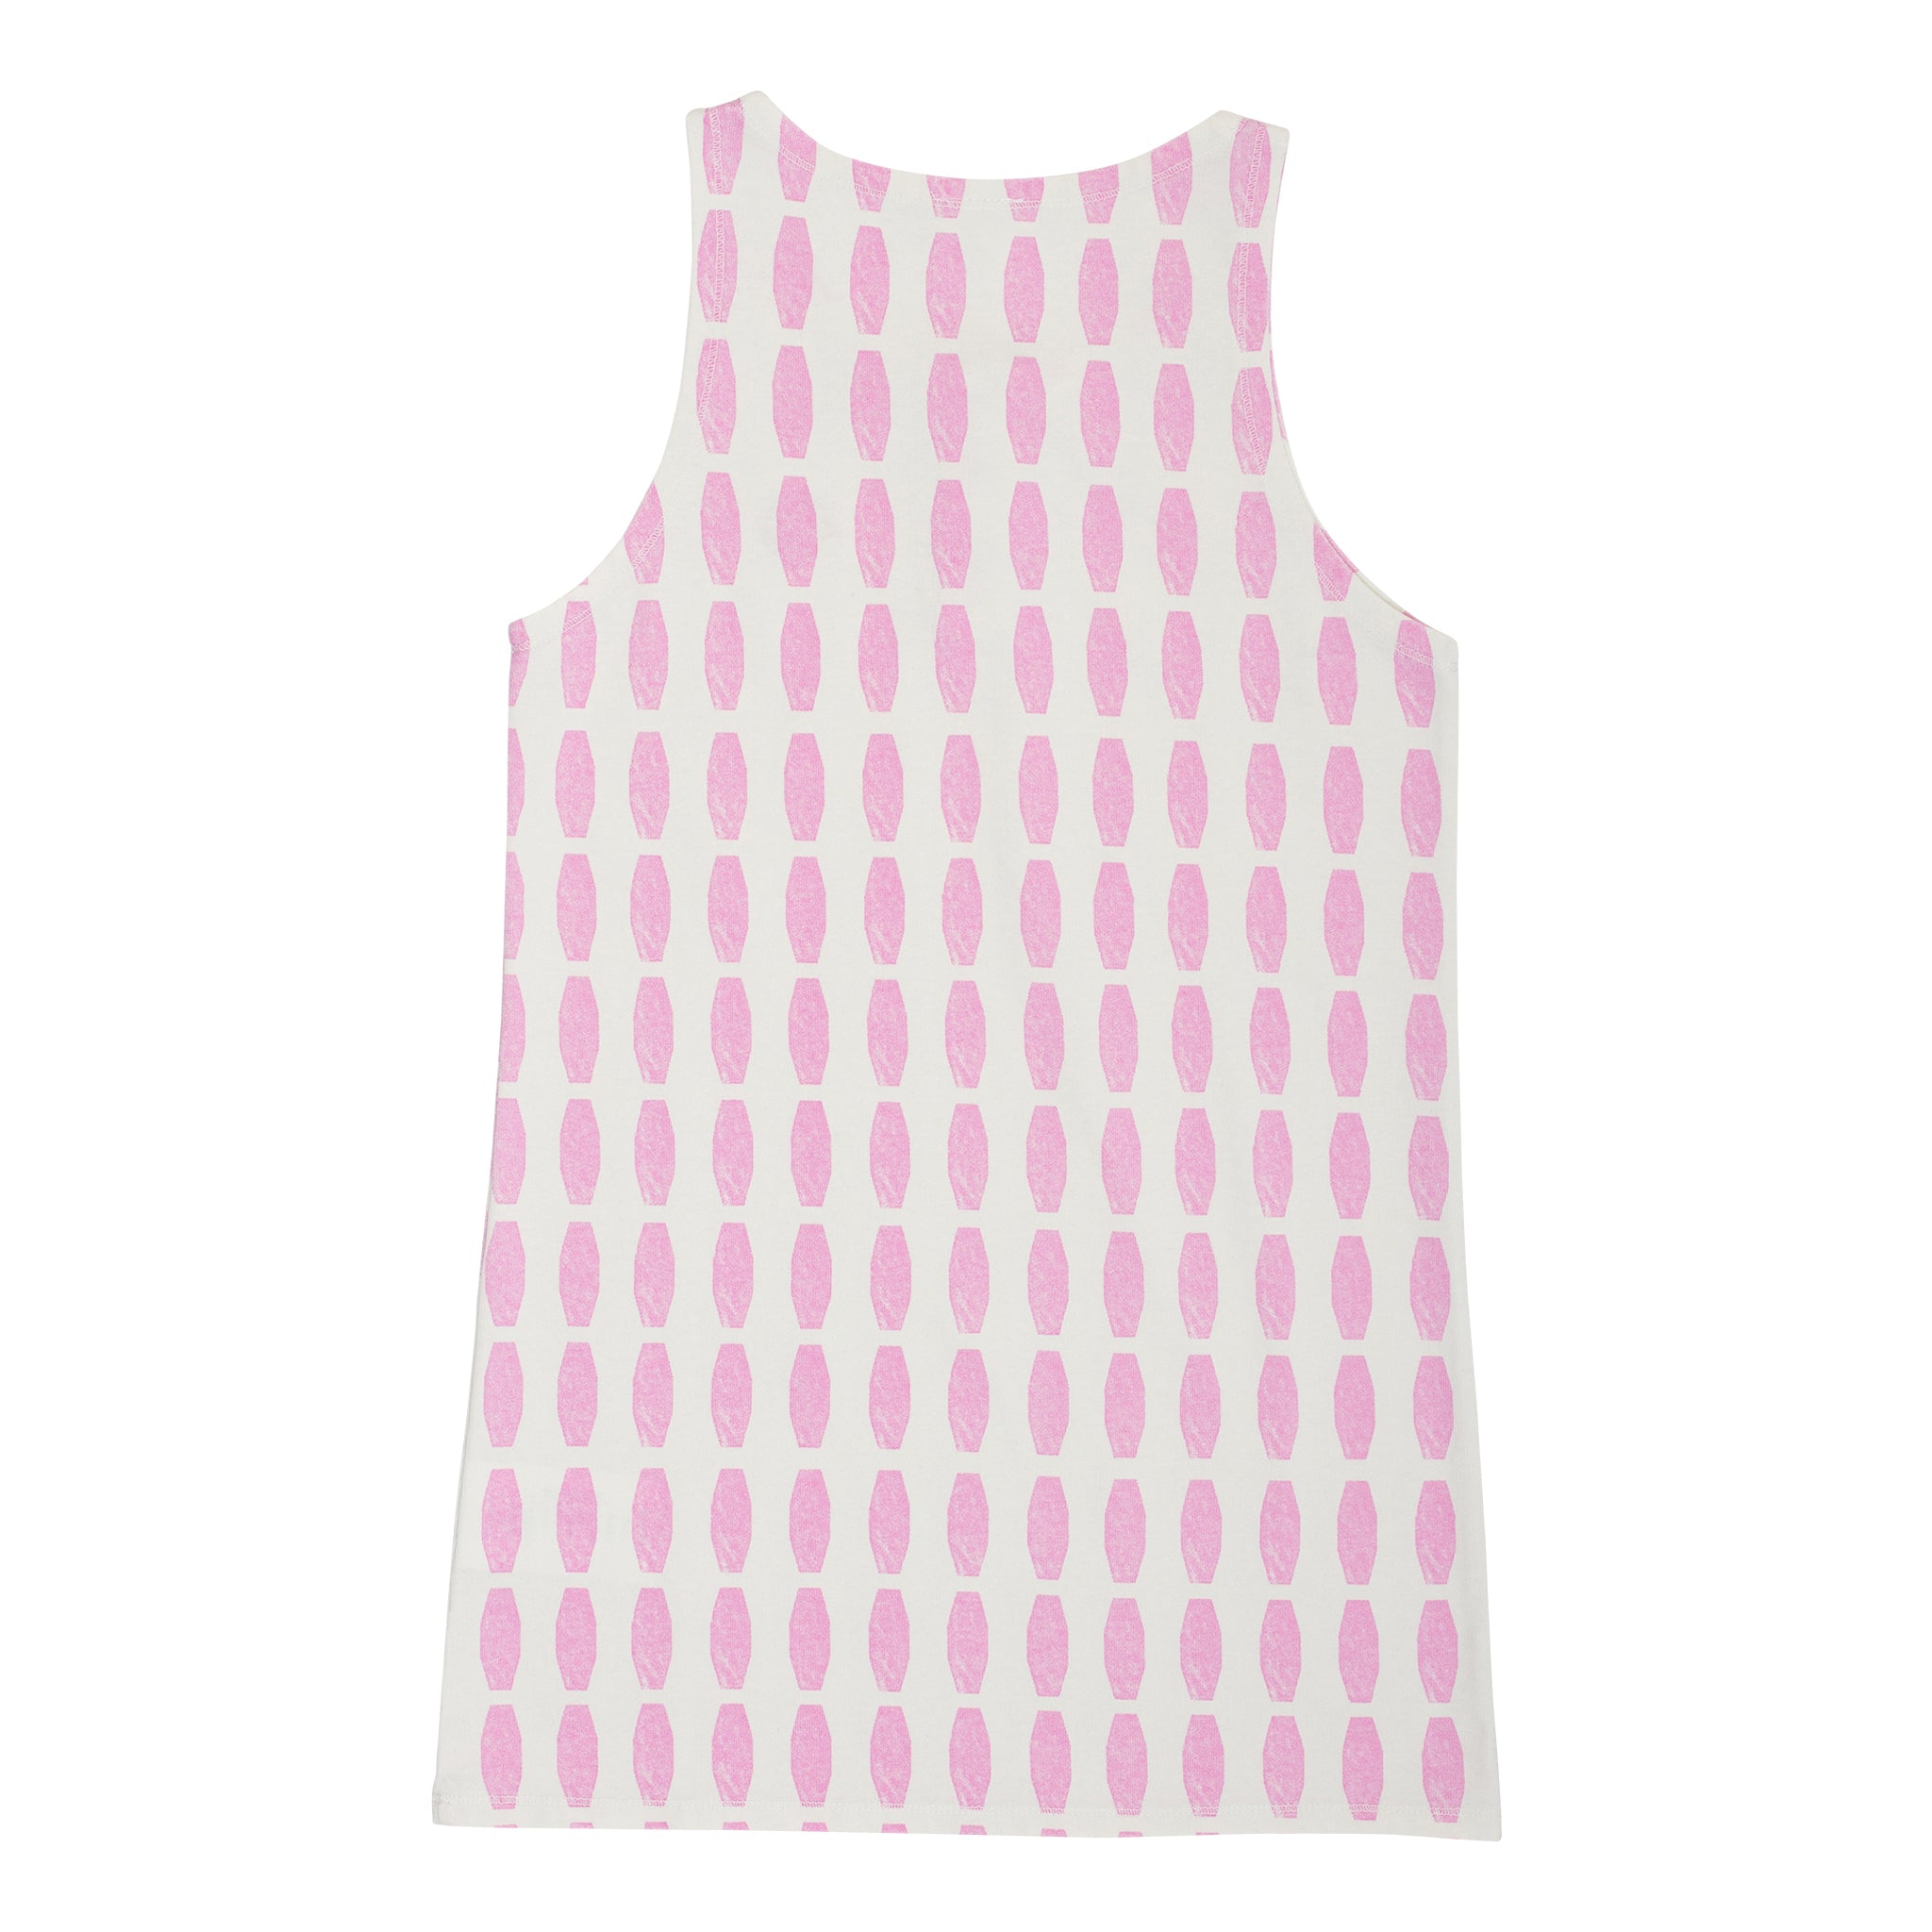 Girls Pink Printed Cotton Dress